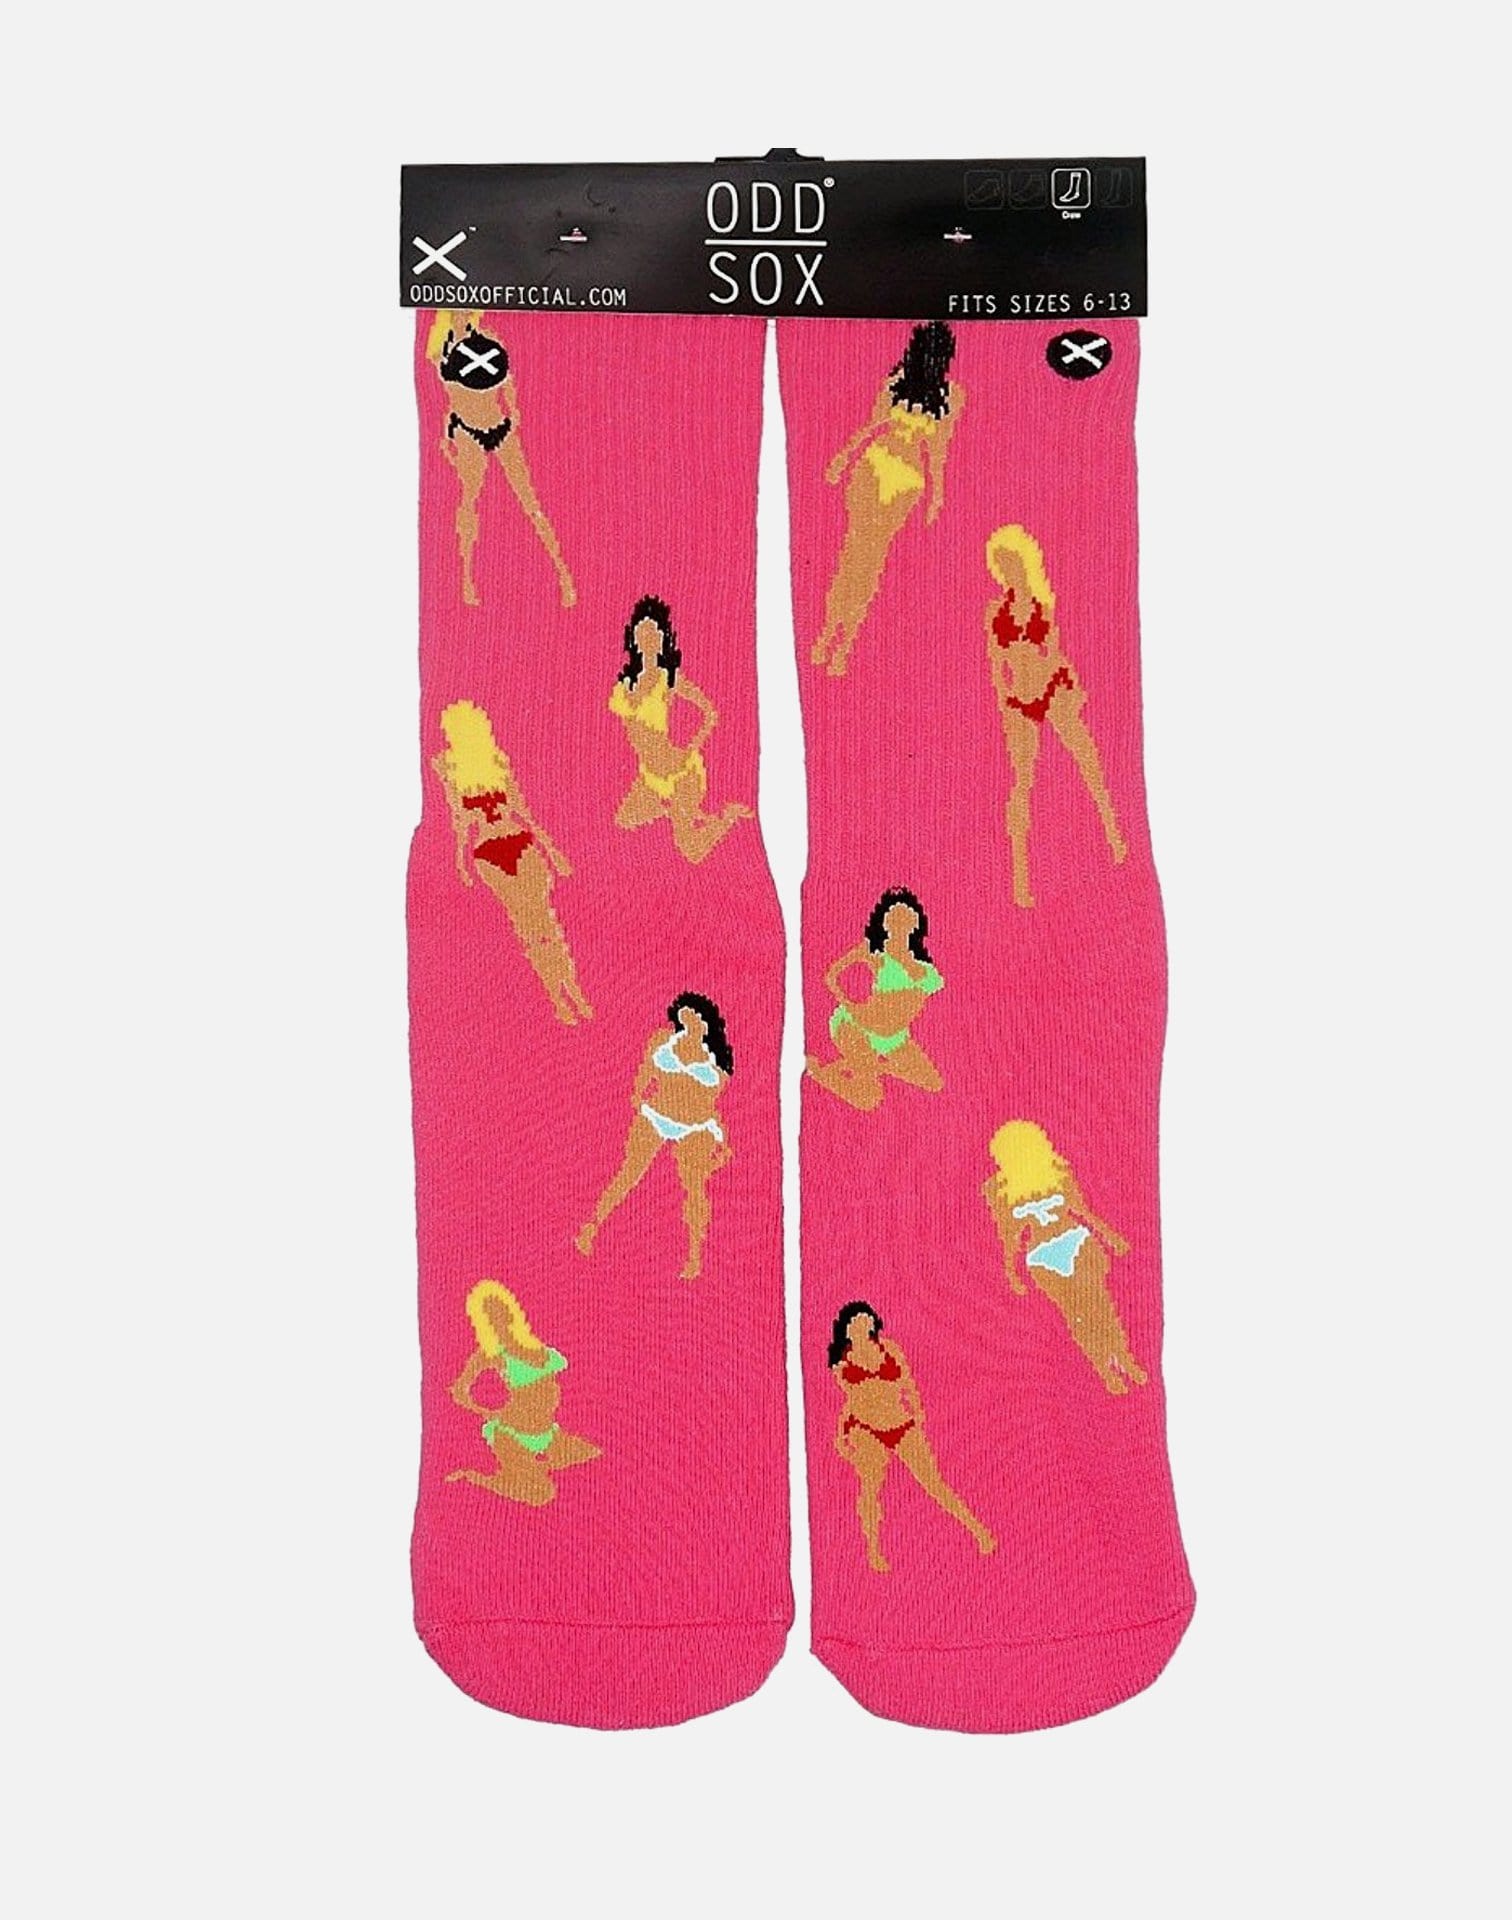 Odd Sox Girlies Socks